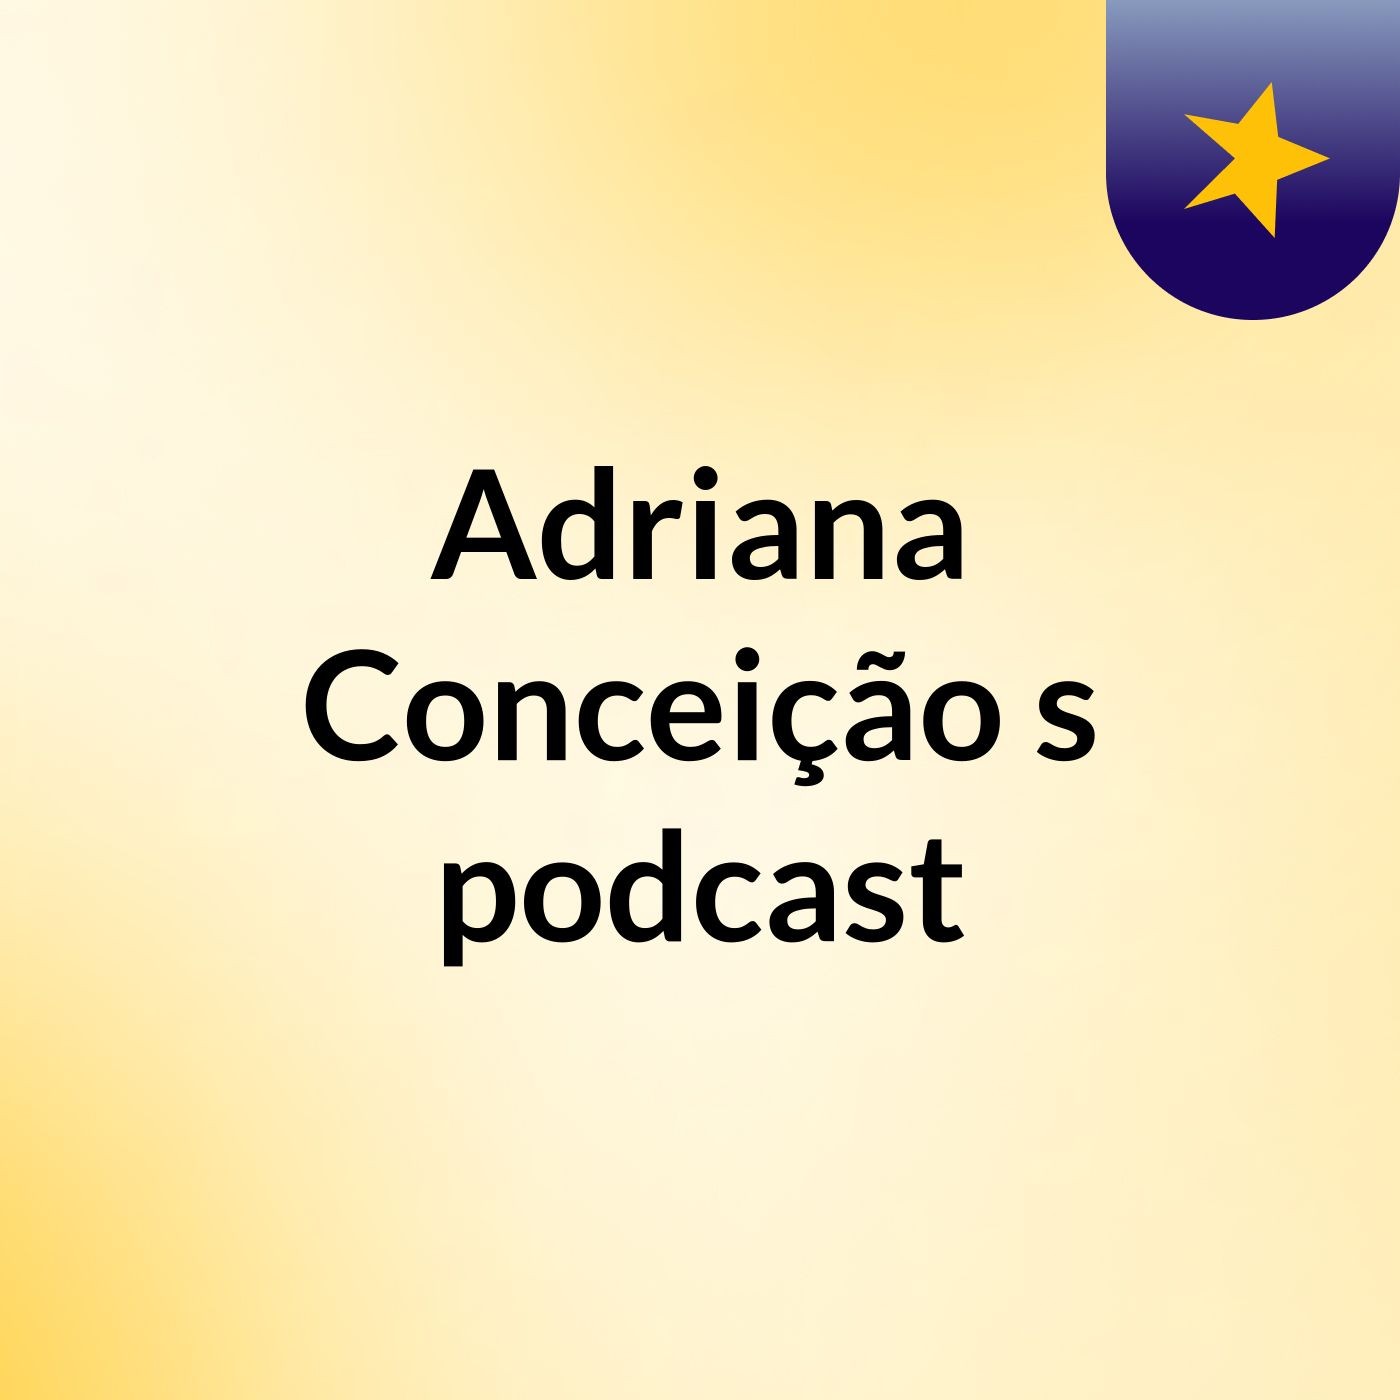 Adriana Conceição's podcast